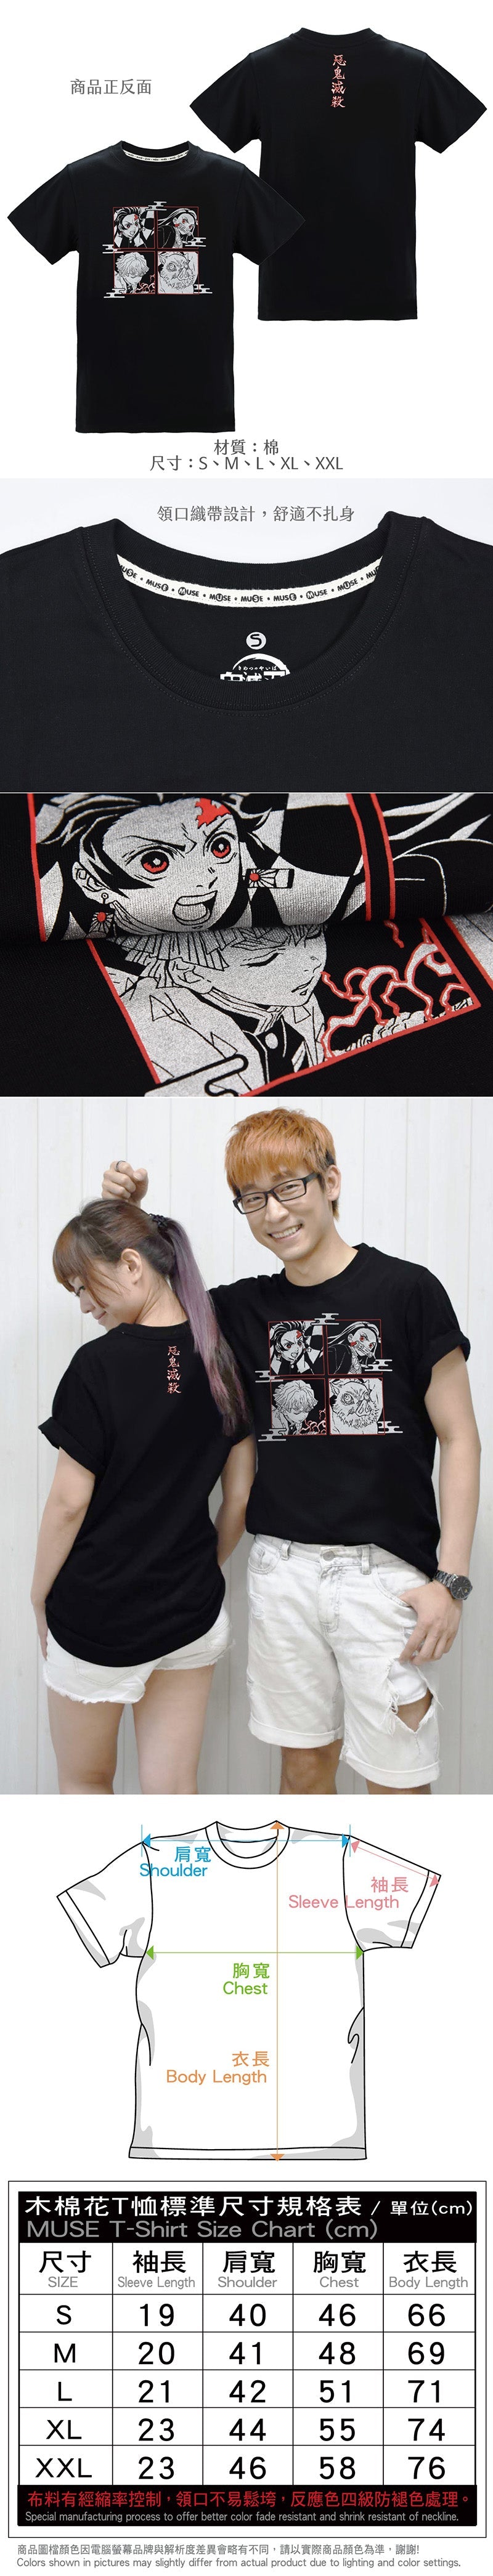 鬼滅之刃 燙銀T-shirt(4人) 劇場版 服裝 Microworks Online Store